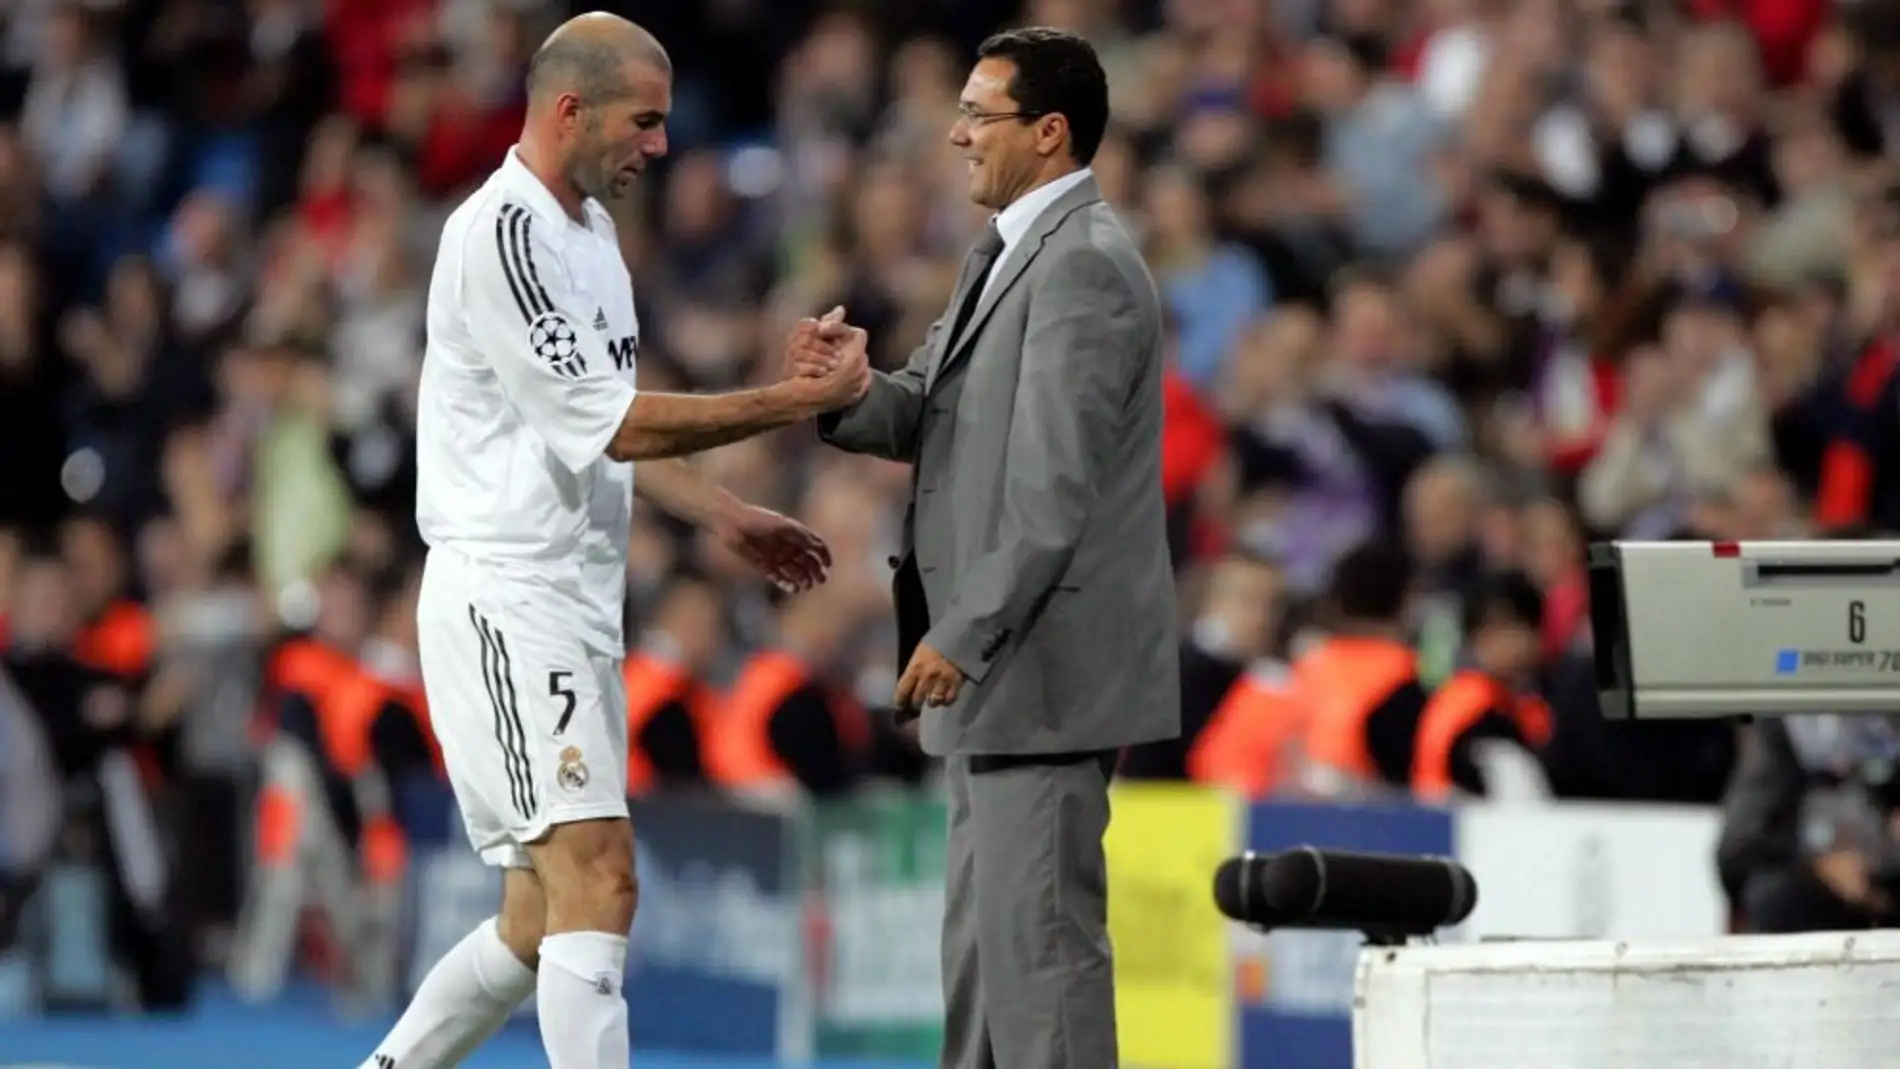 Luxemburgo cambiando a Zidane en un partido del Real Madrid